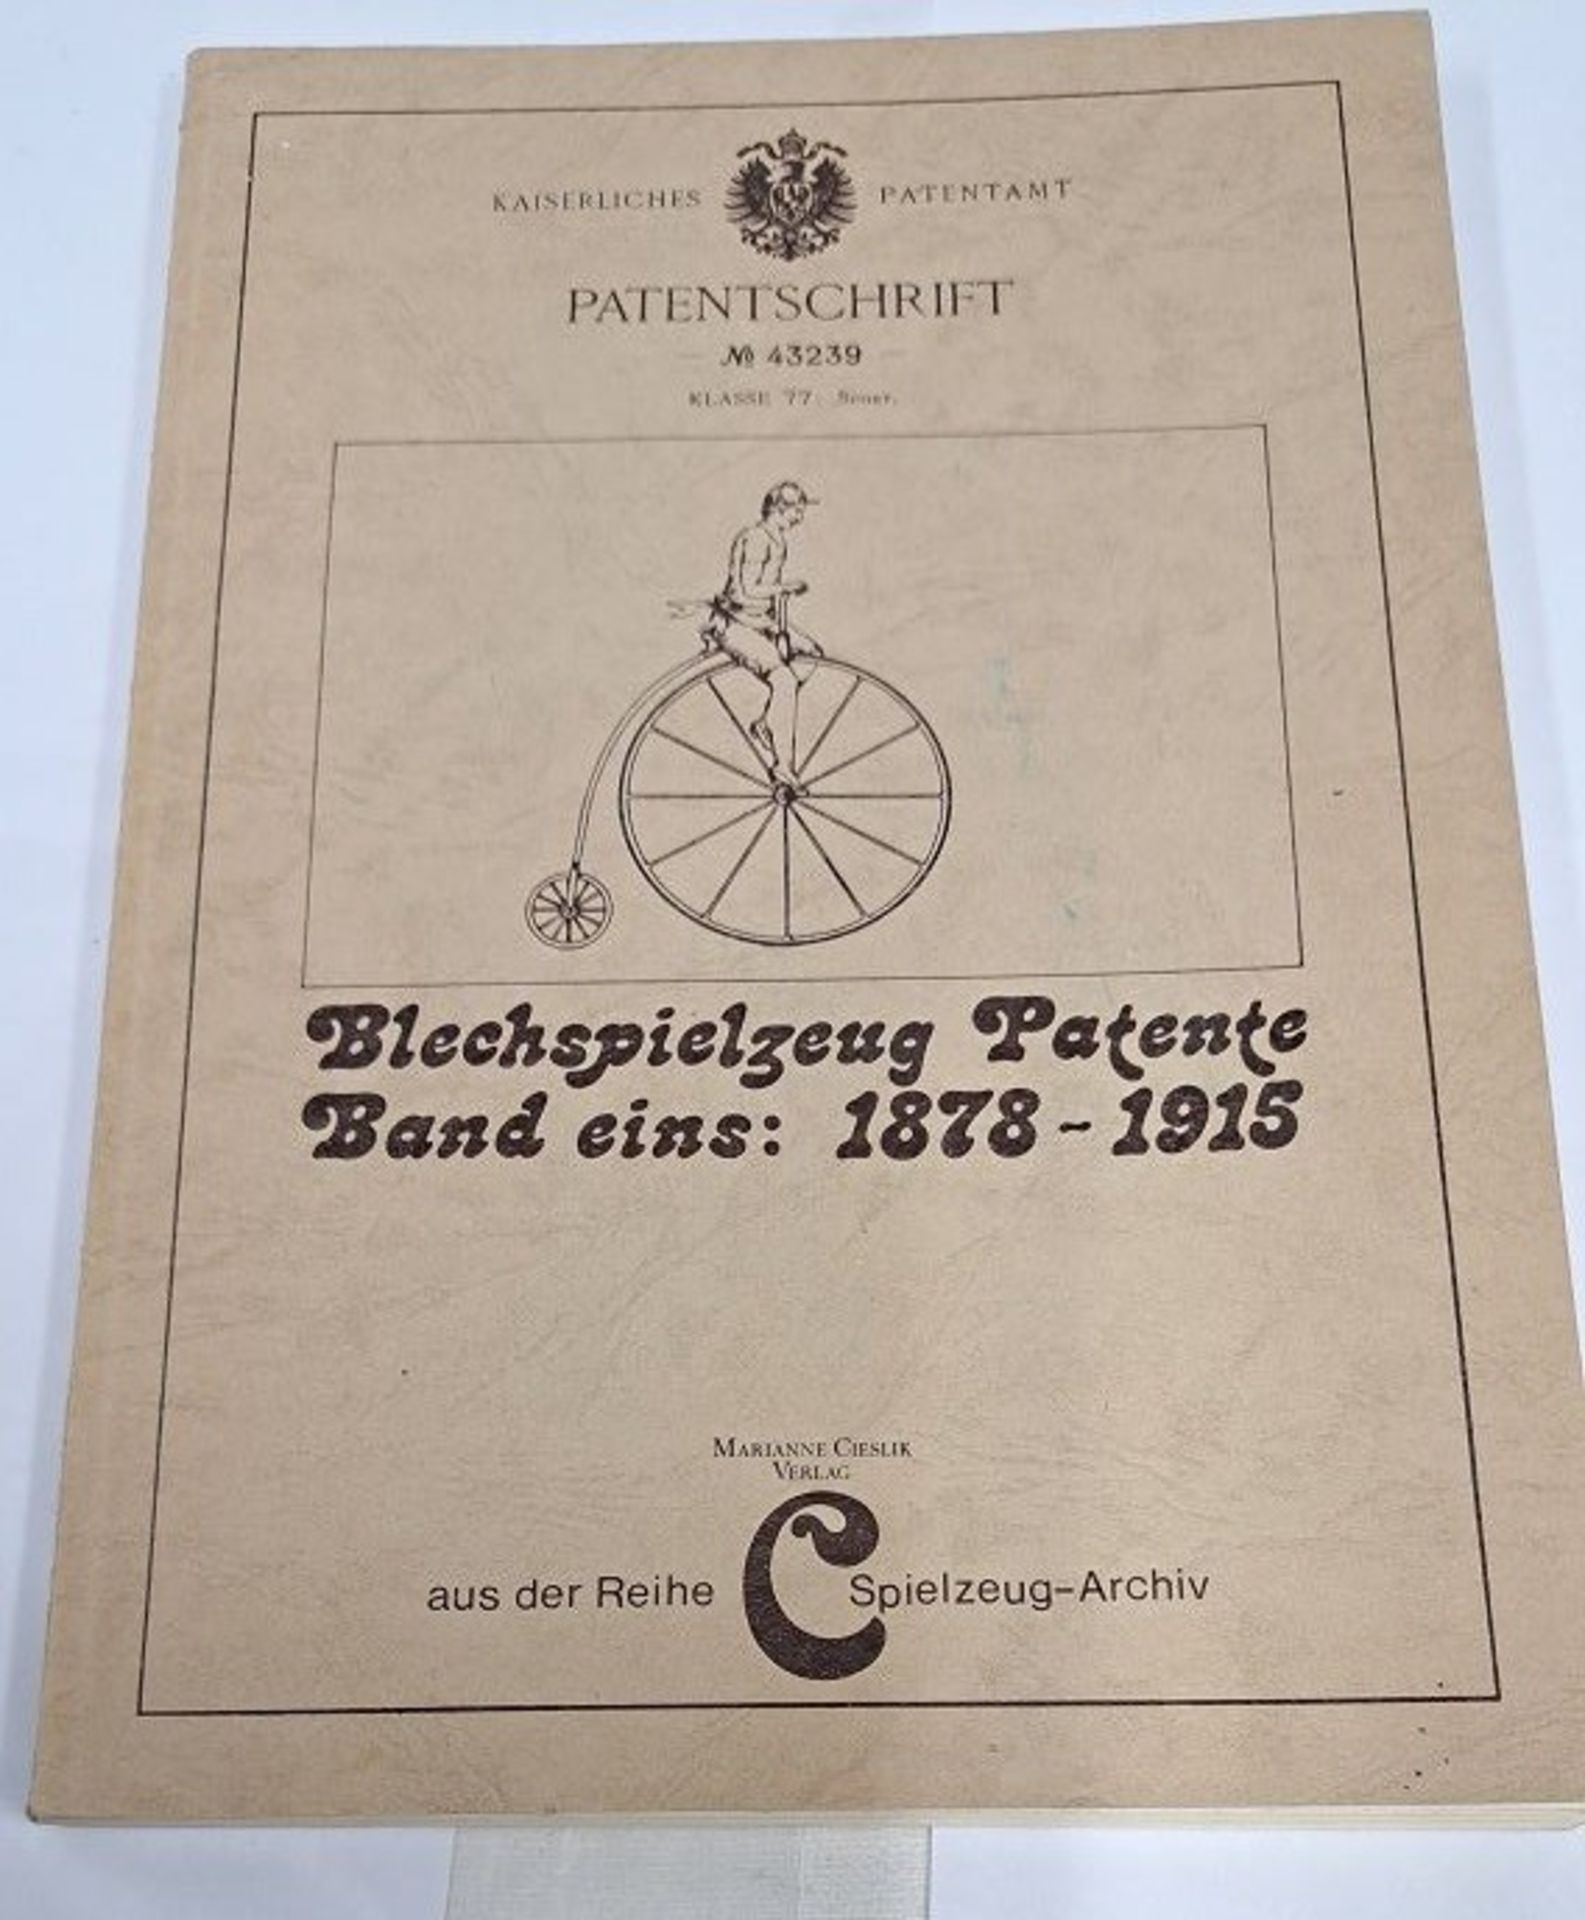 Blechspielzeug Patente Band eins 1878 - 1915